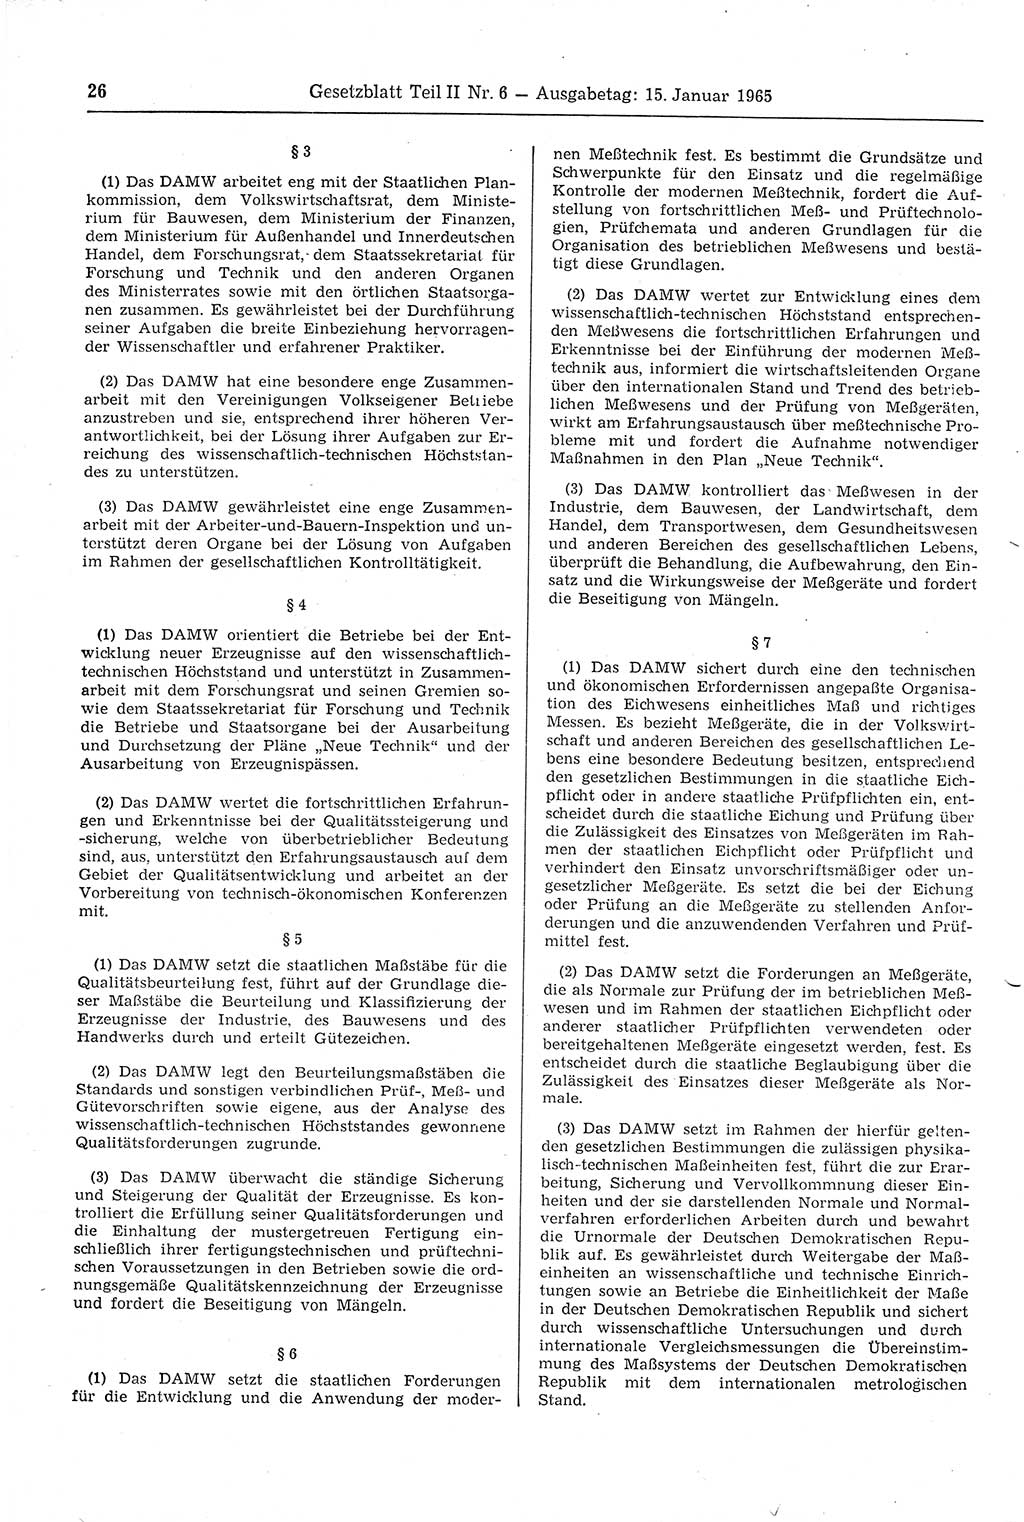 Gesetzblatt (GBl.) der Deutschen Demokratischen Republik (DDR) Teil ⅠⅠ 1965, Seite 26 (GBl. DDR ⅠⅠ 1965, S. 26)